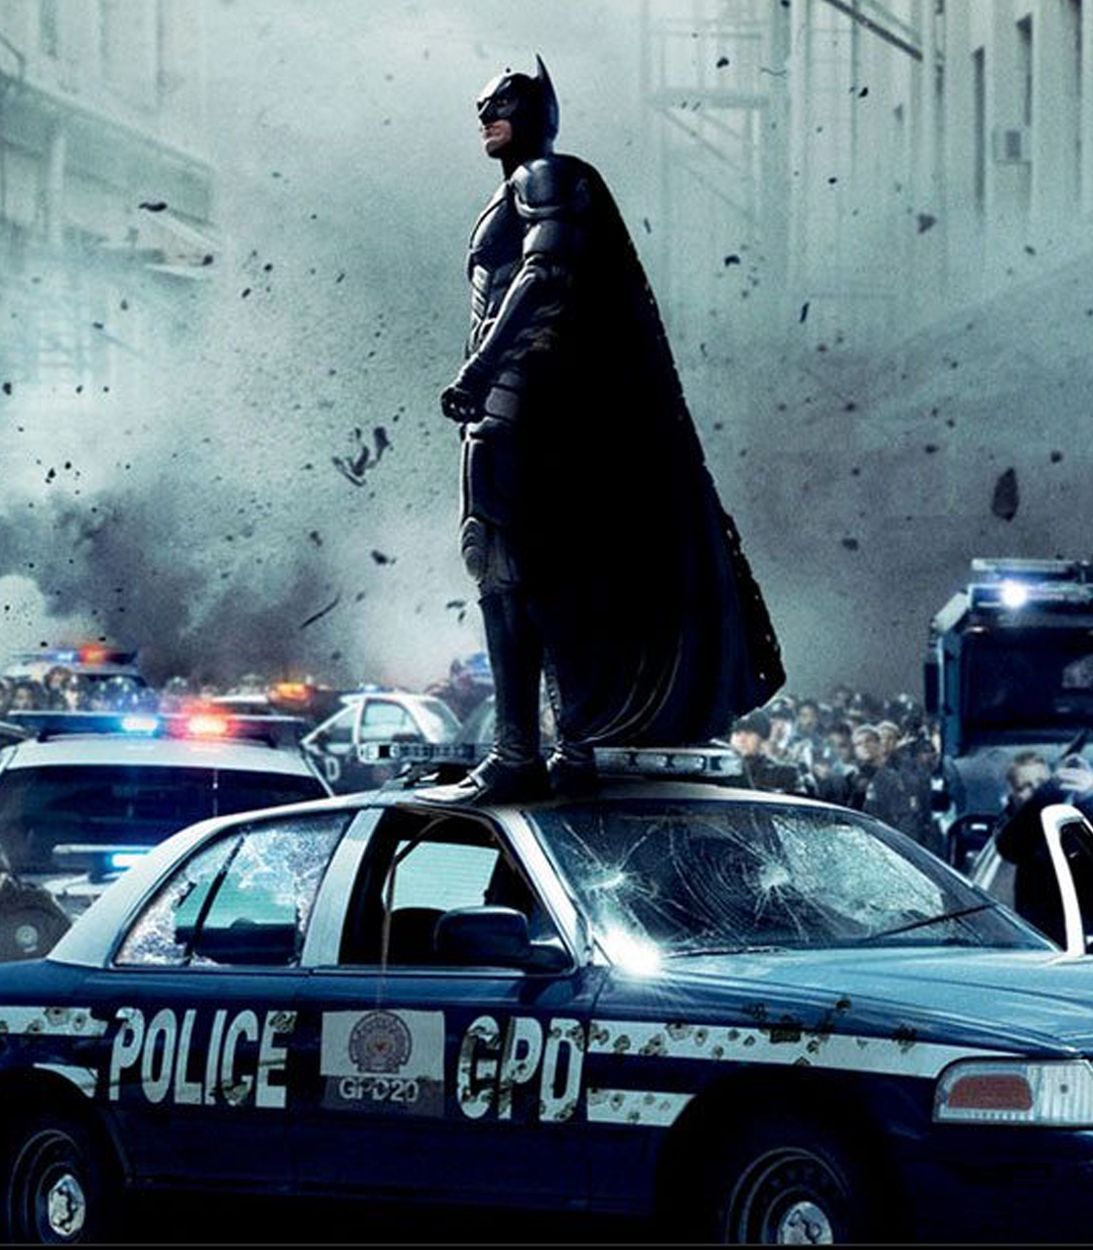 Dark Knight Rises cop car Vertical